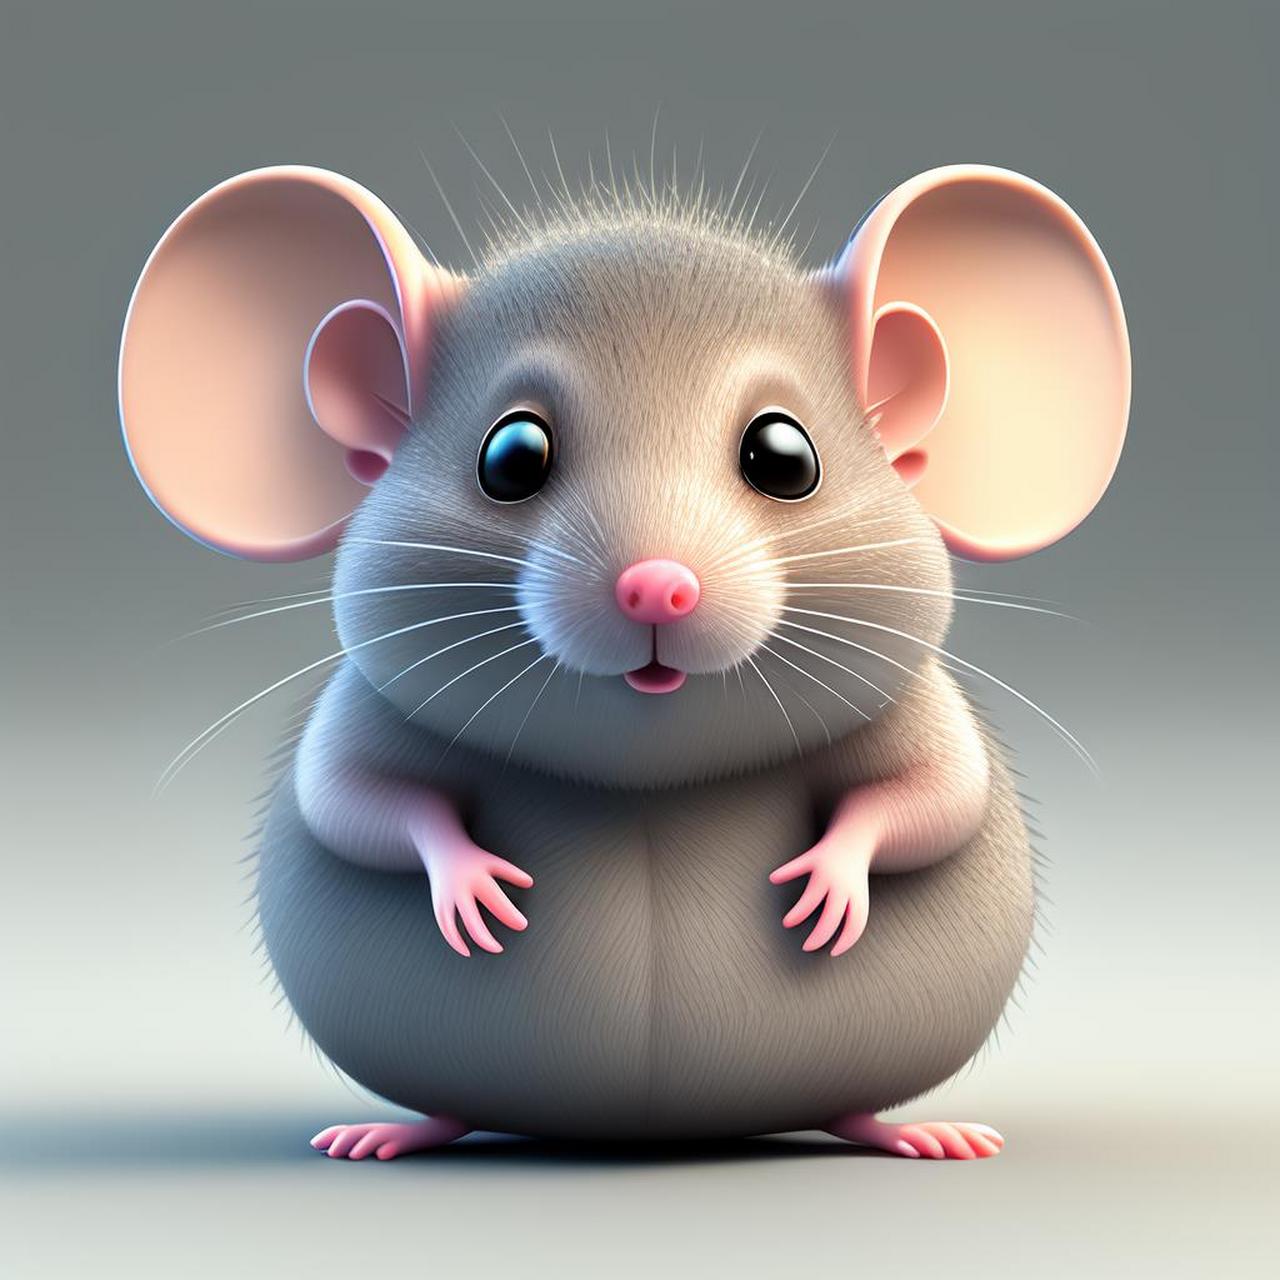 老鼠头像 微信 可爱图片